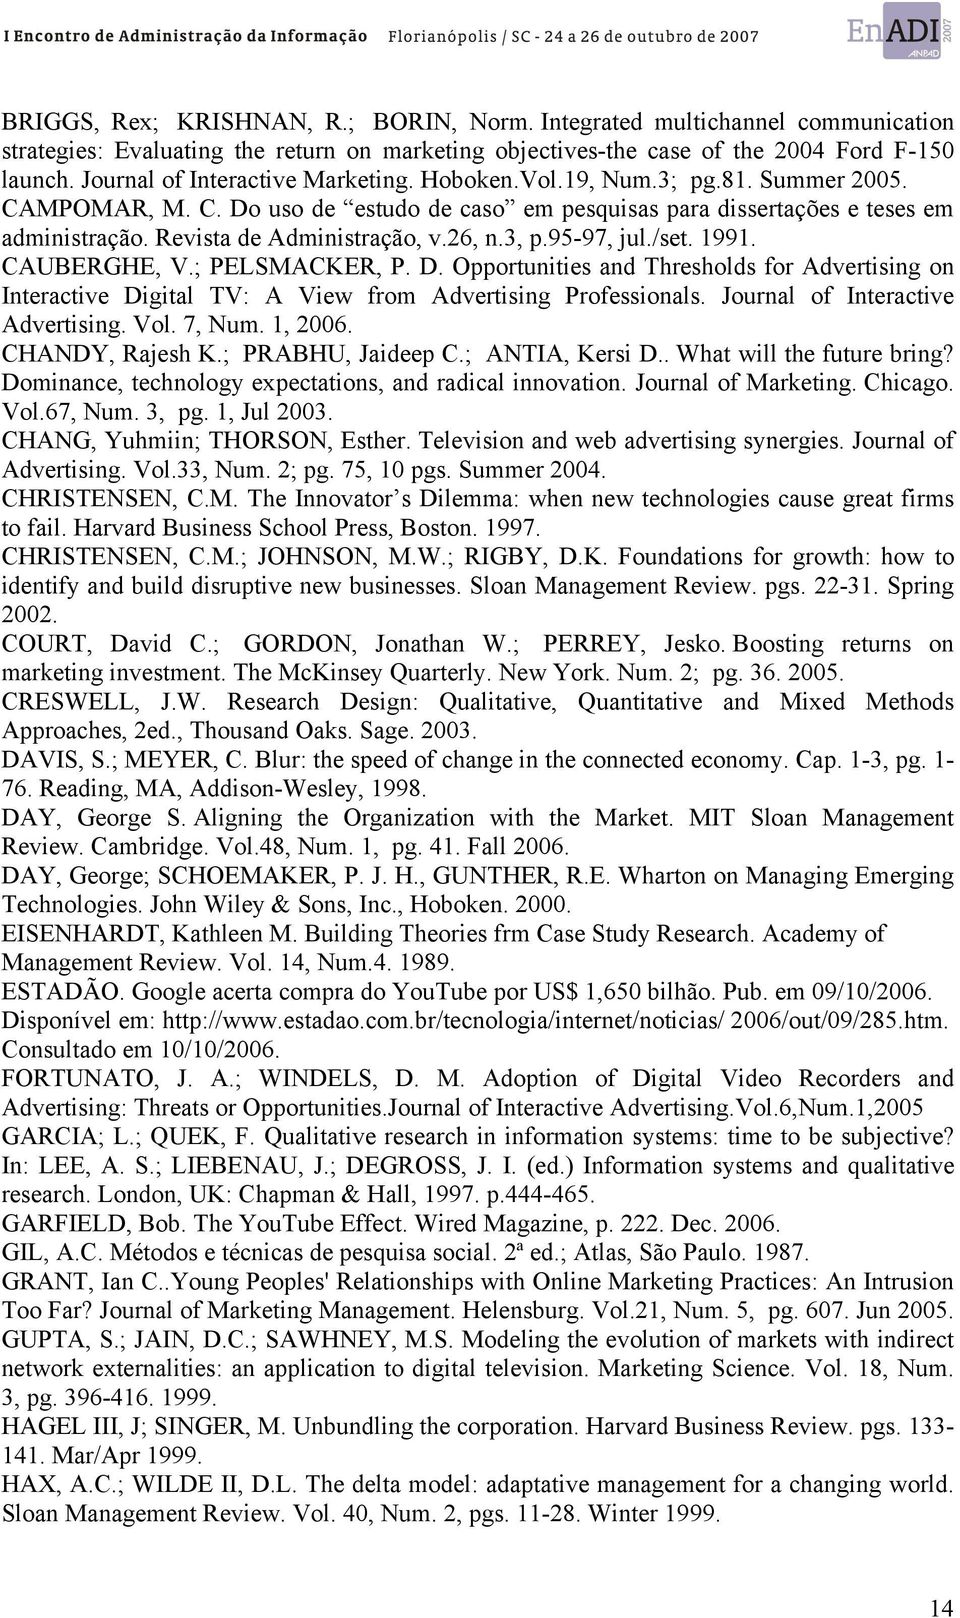 Revista de Administração, v.26, n.3, p.95-97, jul./set. 1991. CAUBERGHE, V.; PELSMACKER, P. D.